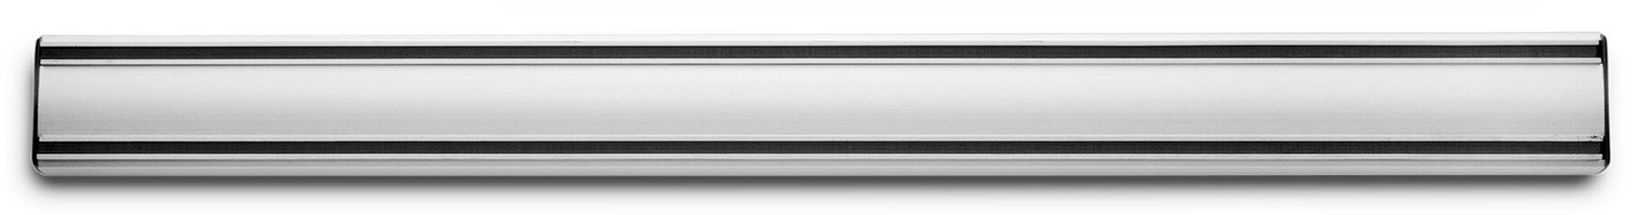 Wusthof Magnetic Knife Holder Metal 50 cm